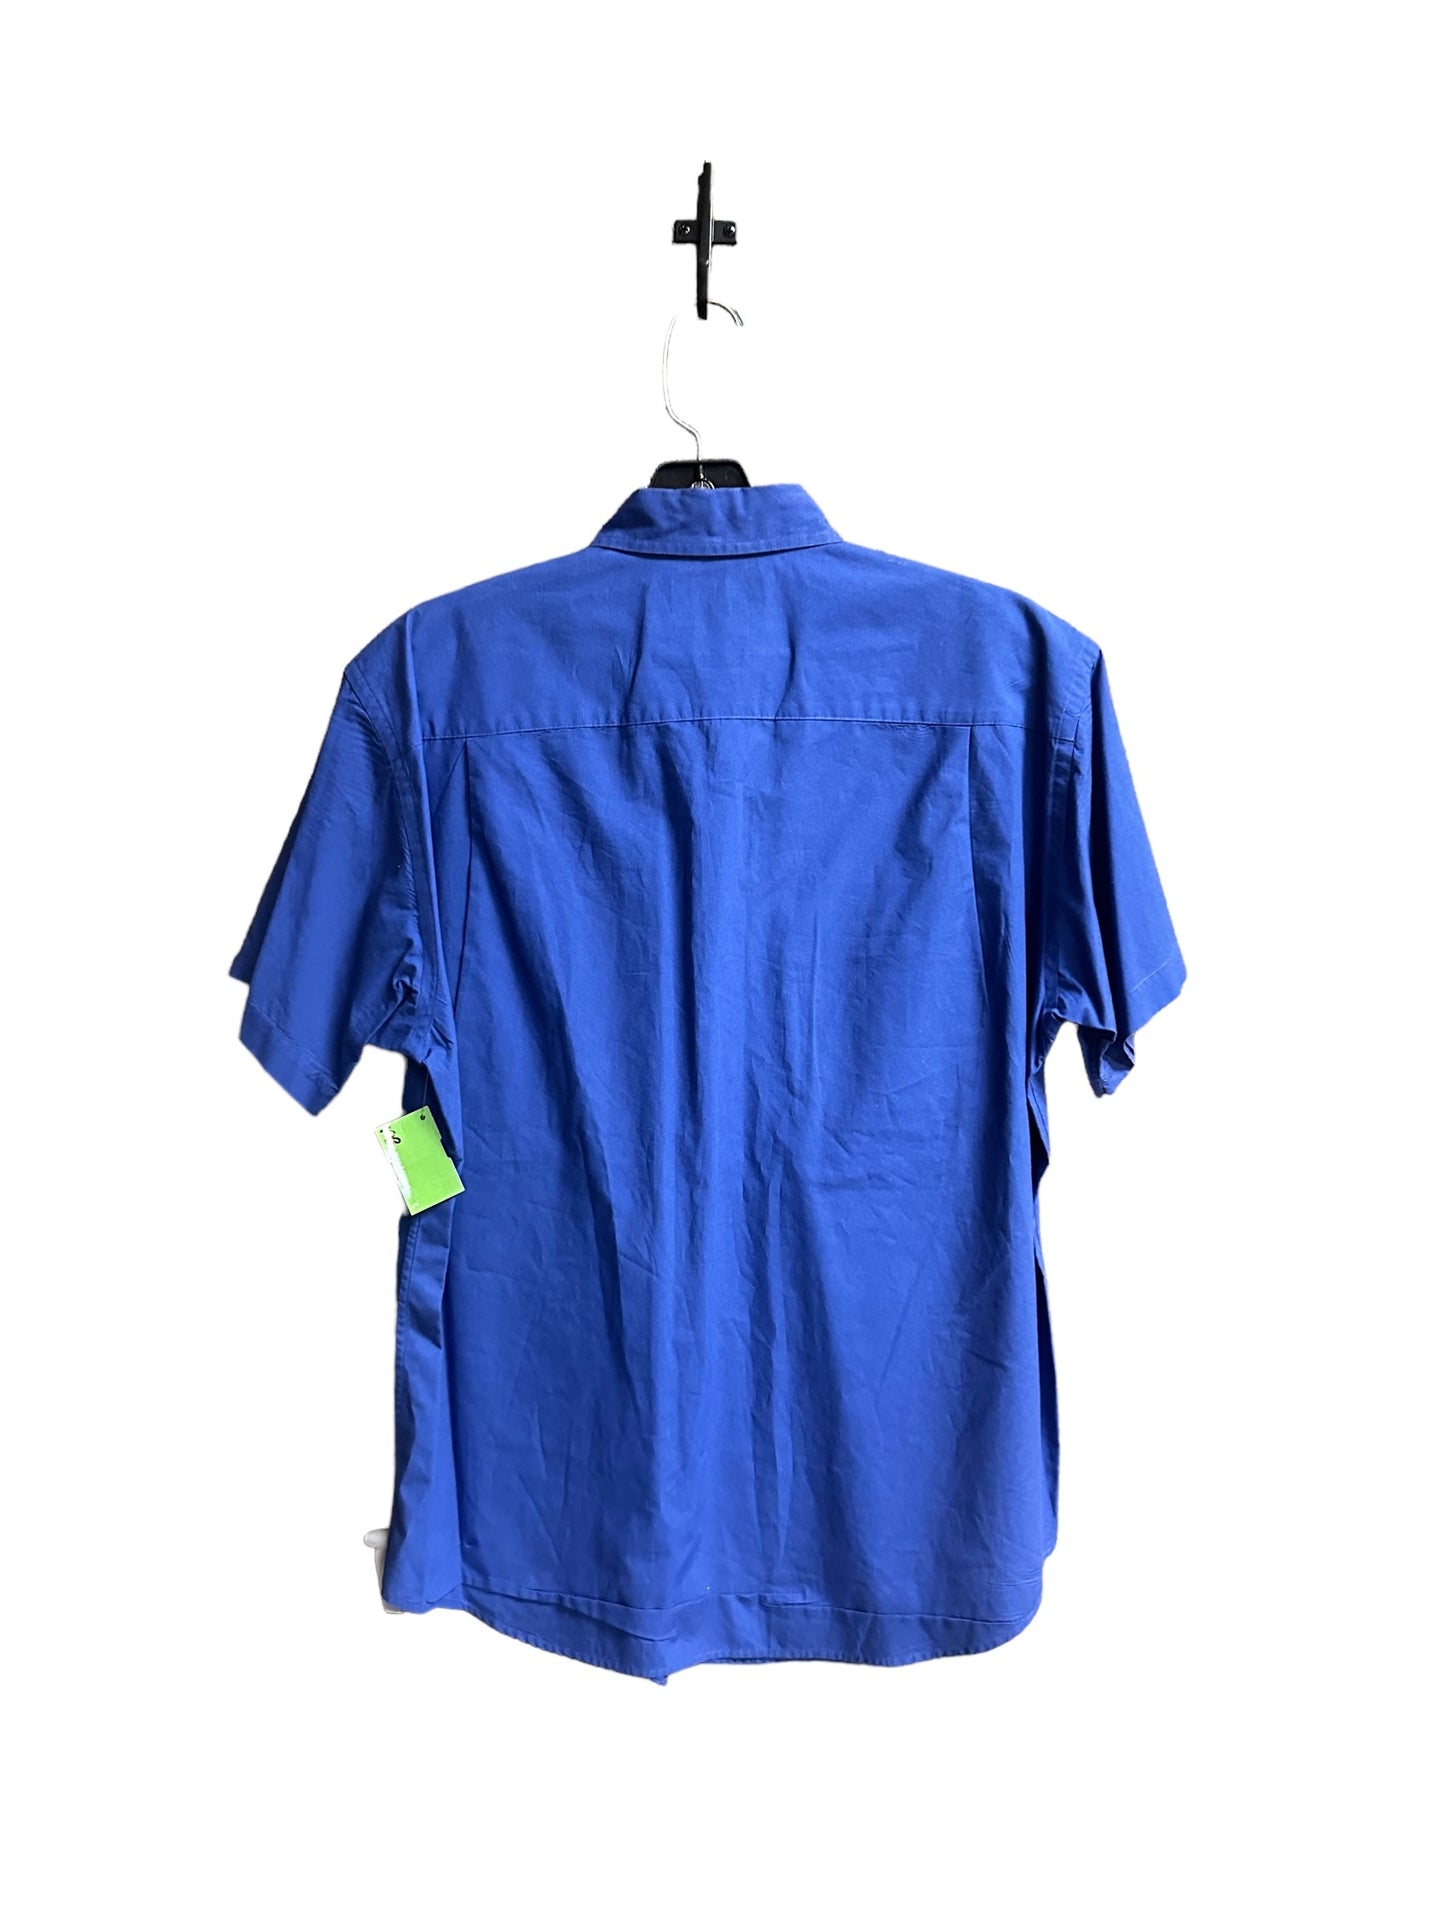 Blue Top Short Sleeve Ralph Lauren, Size 8